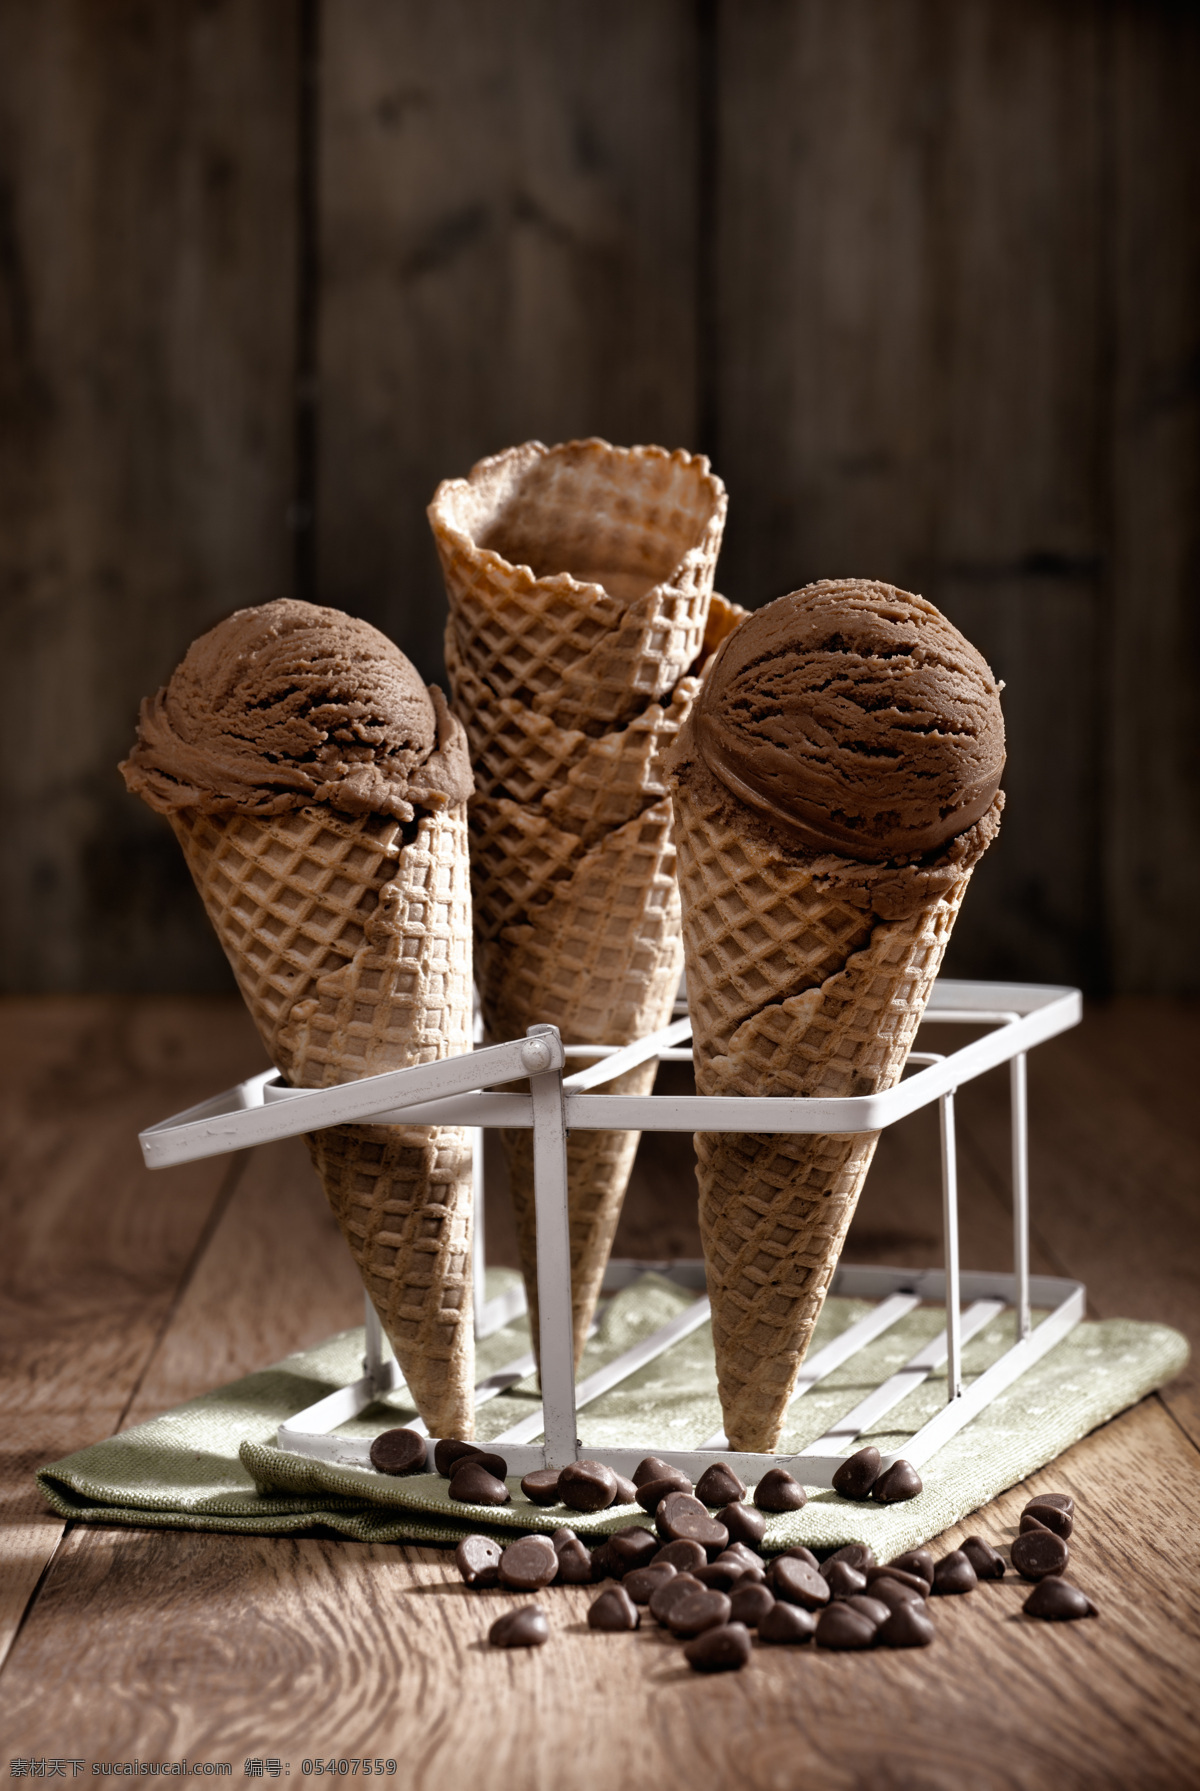 巧克力 冰 激 淋 豆 点心 美食 甜品 巧克力豆 巧克力冰激淋 冷饮 其他类别 餐饮美食 黑色